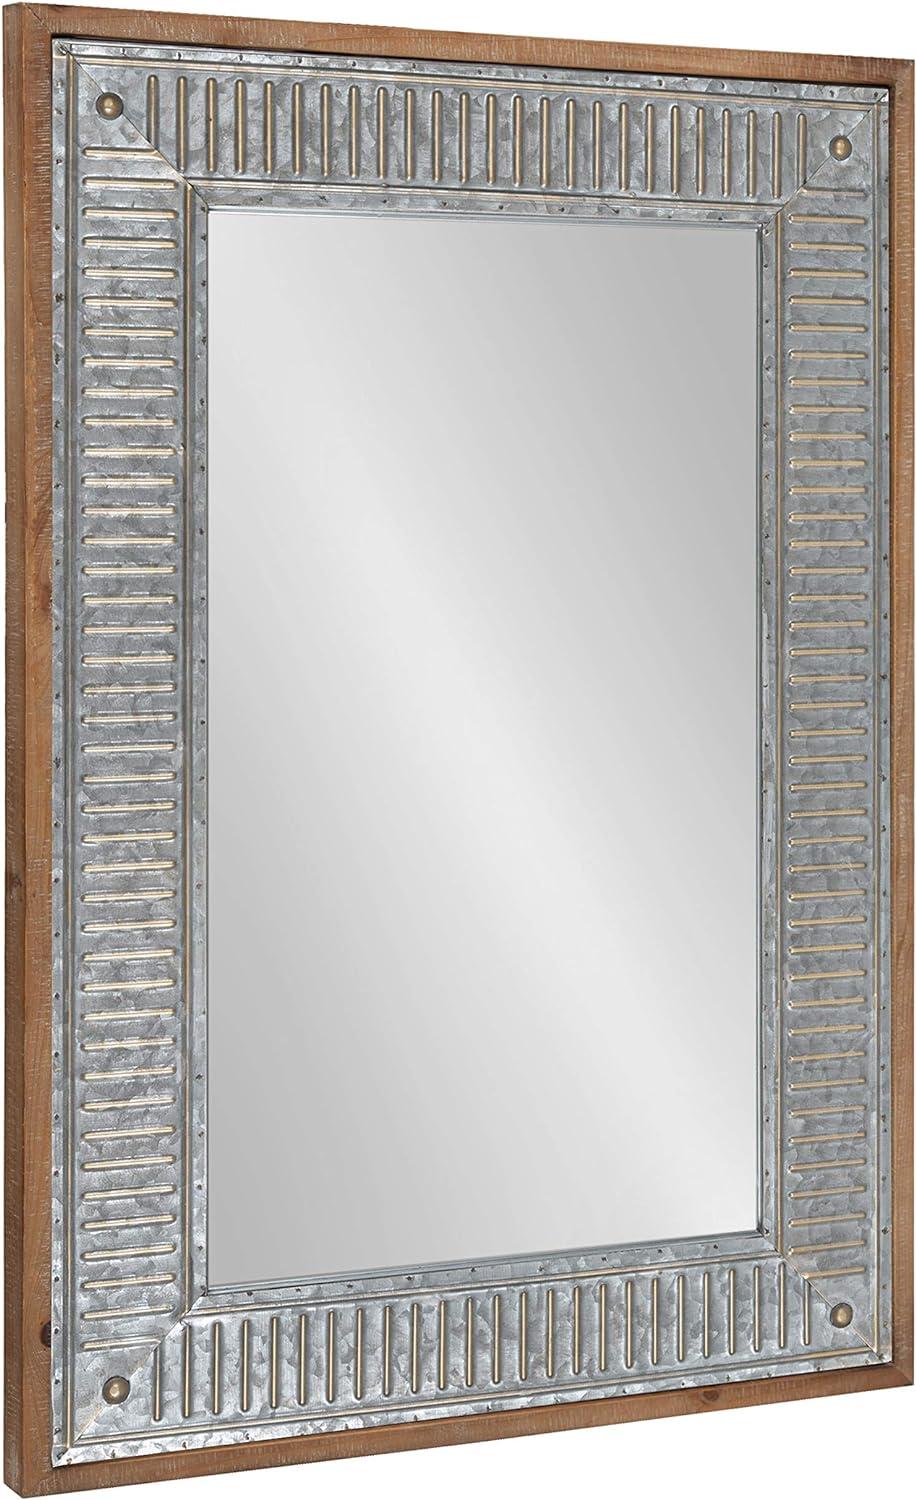 Rustic Brown Wood and Metal Full-Length Rectangular Mirror